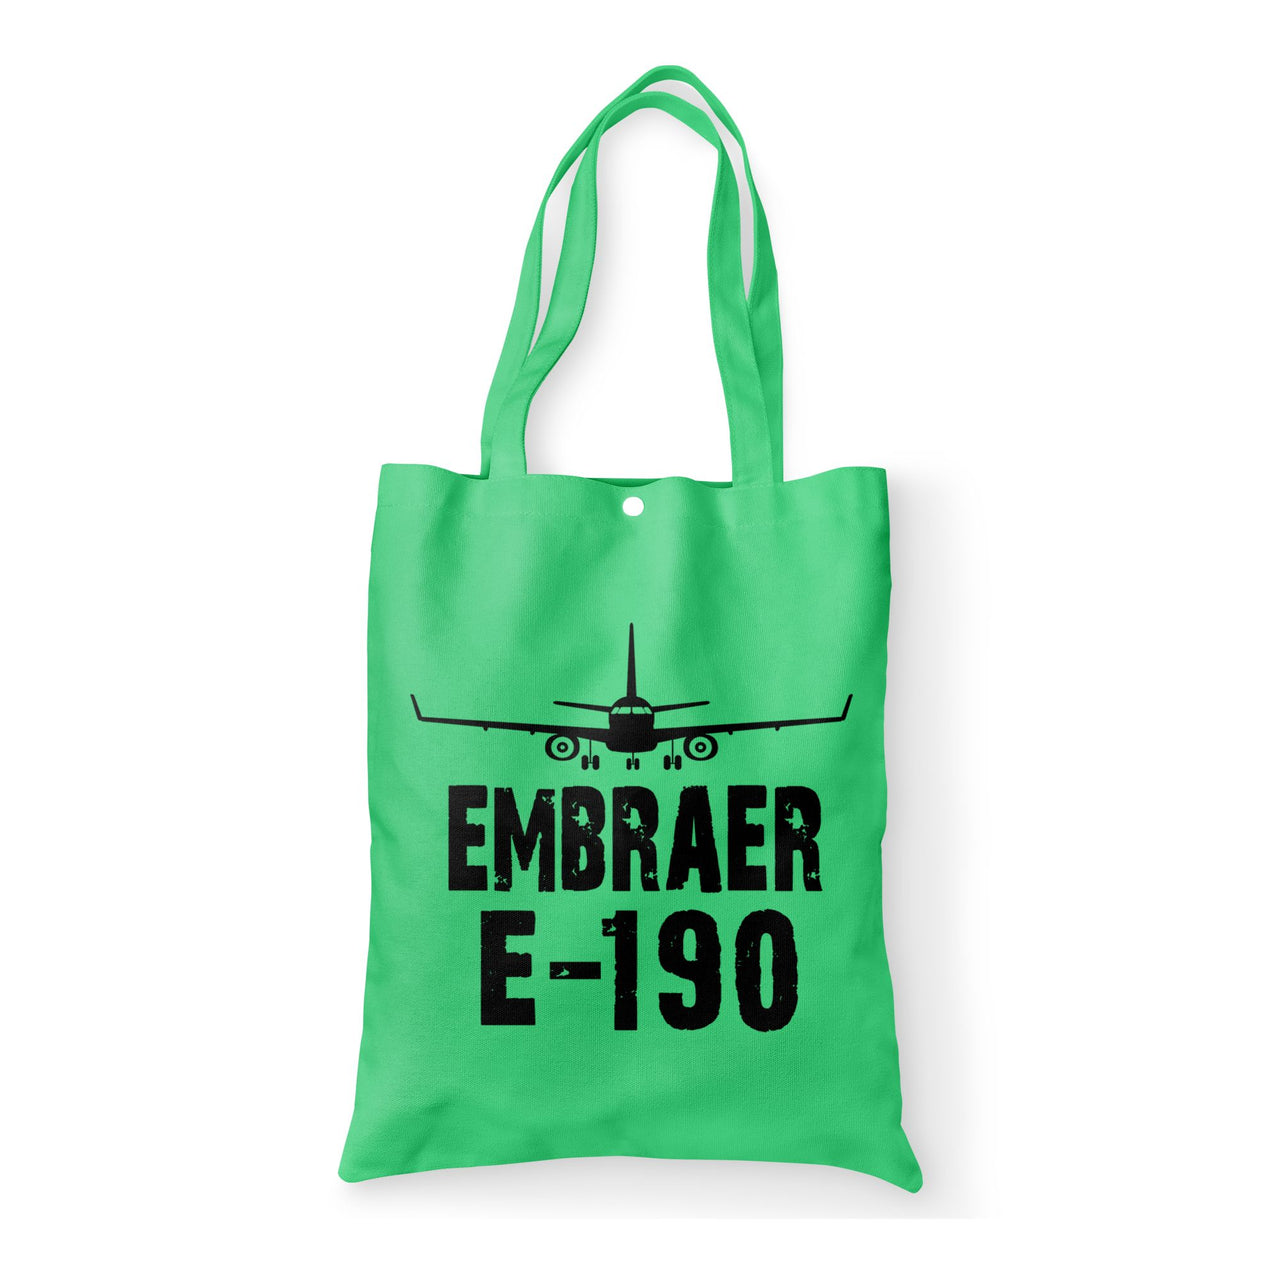 Embraer E-190 & Plane Designed Tote Bags